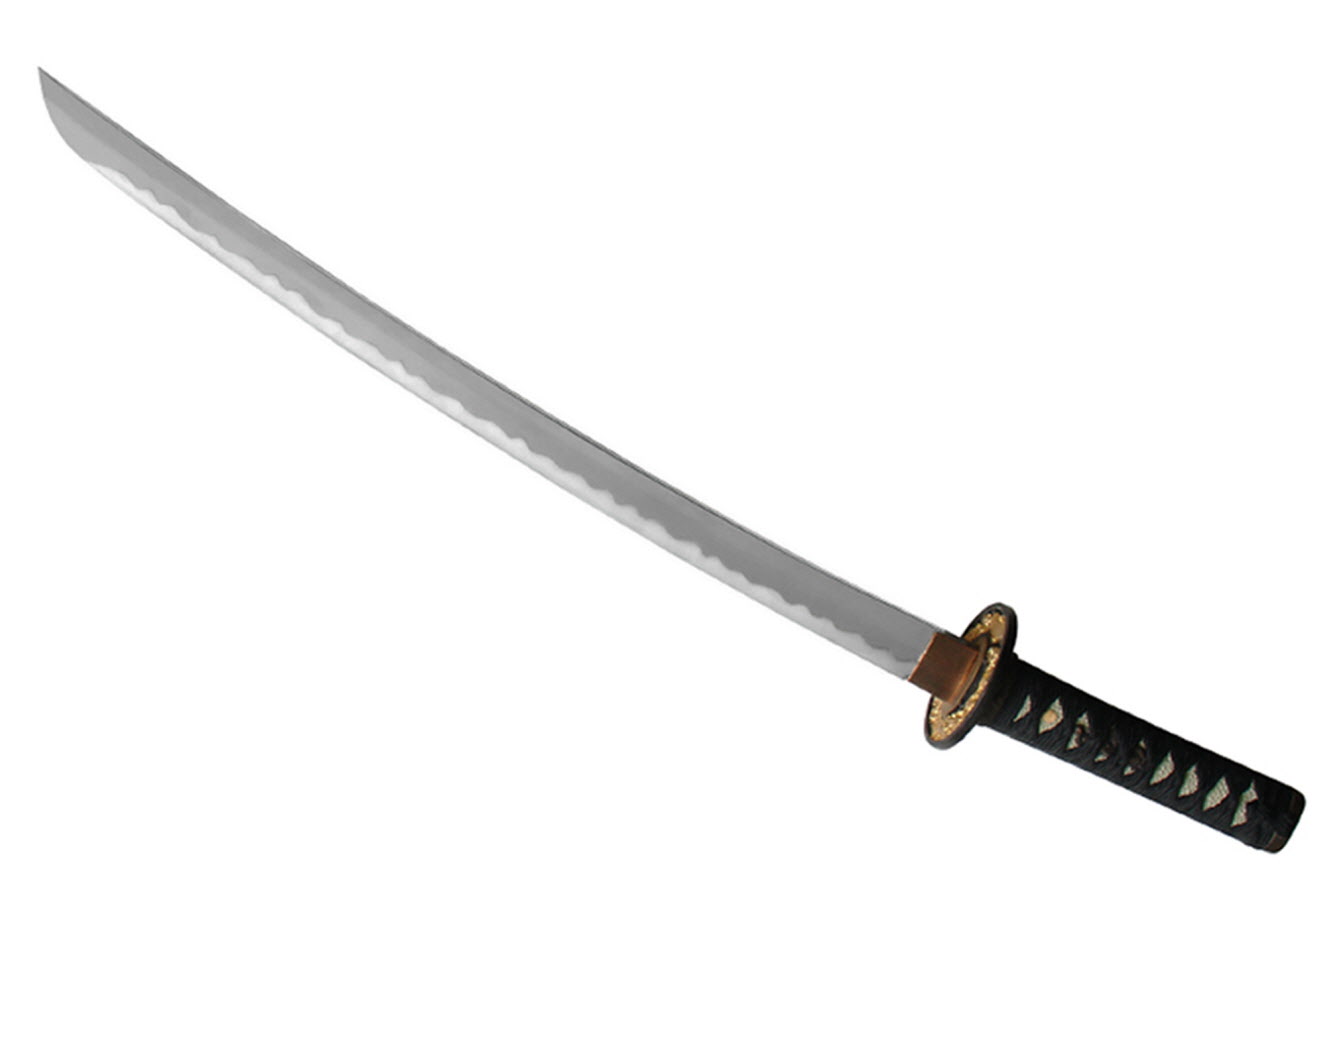 Samurai Sword Backgrounds, Compatible - PC, Mobile, Gadgets| 1333x1063 px